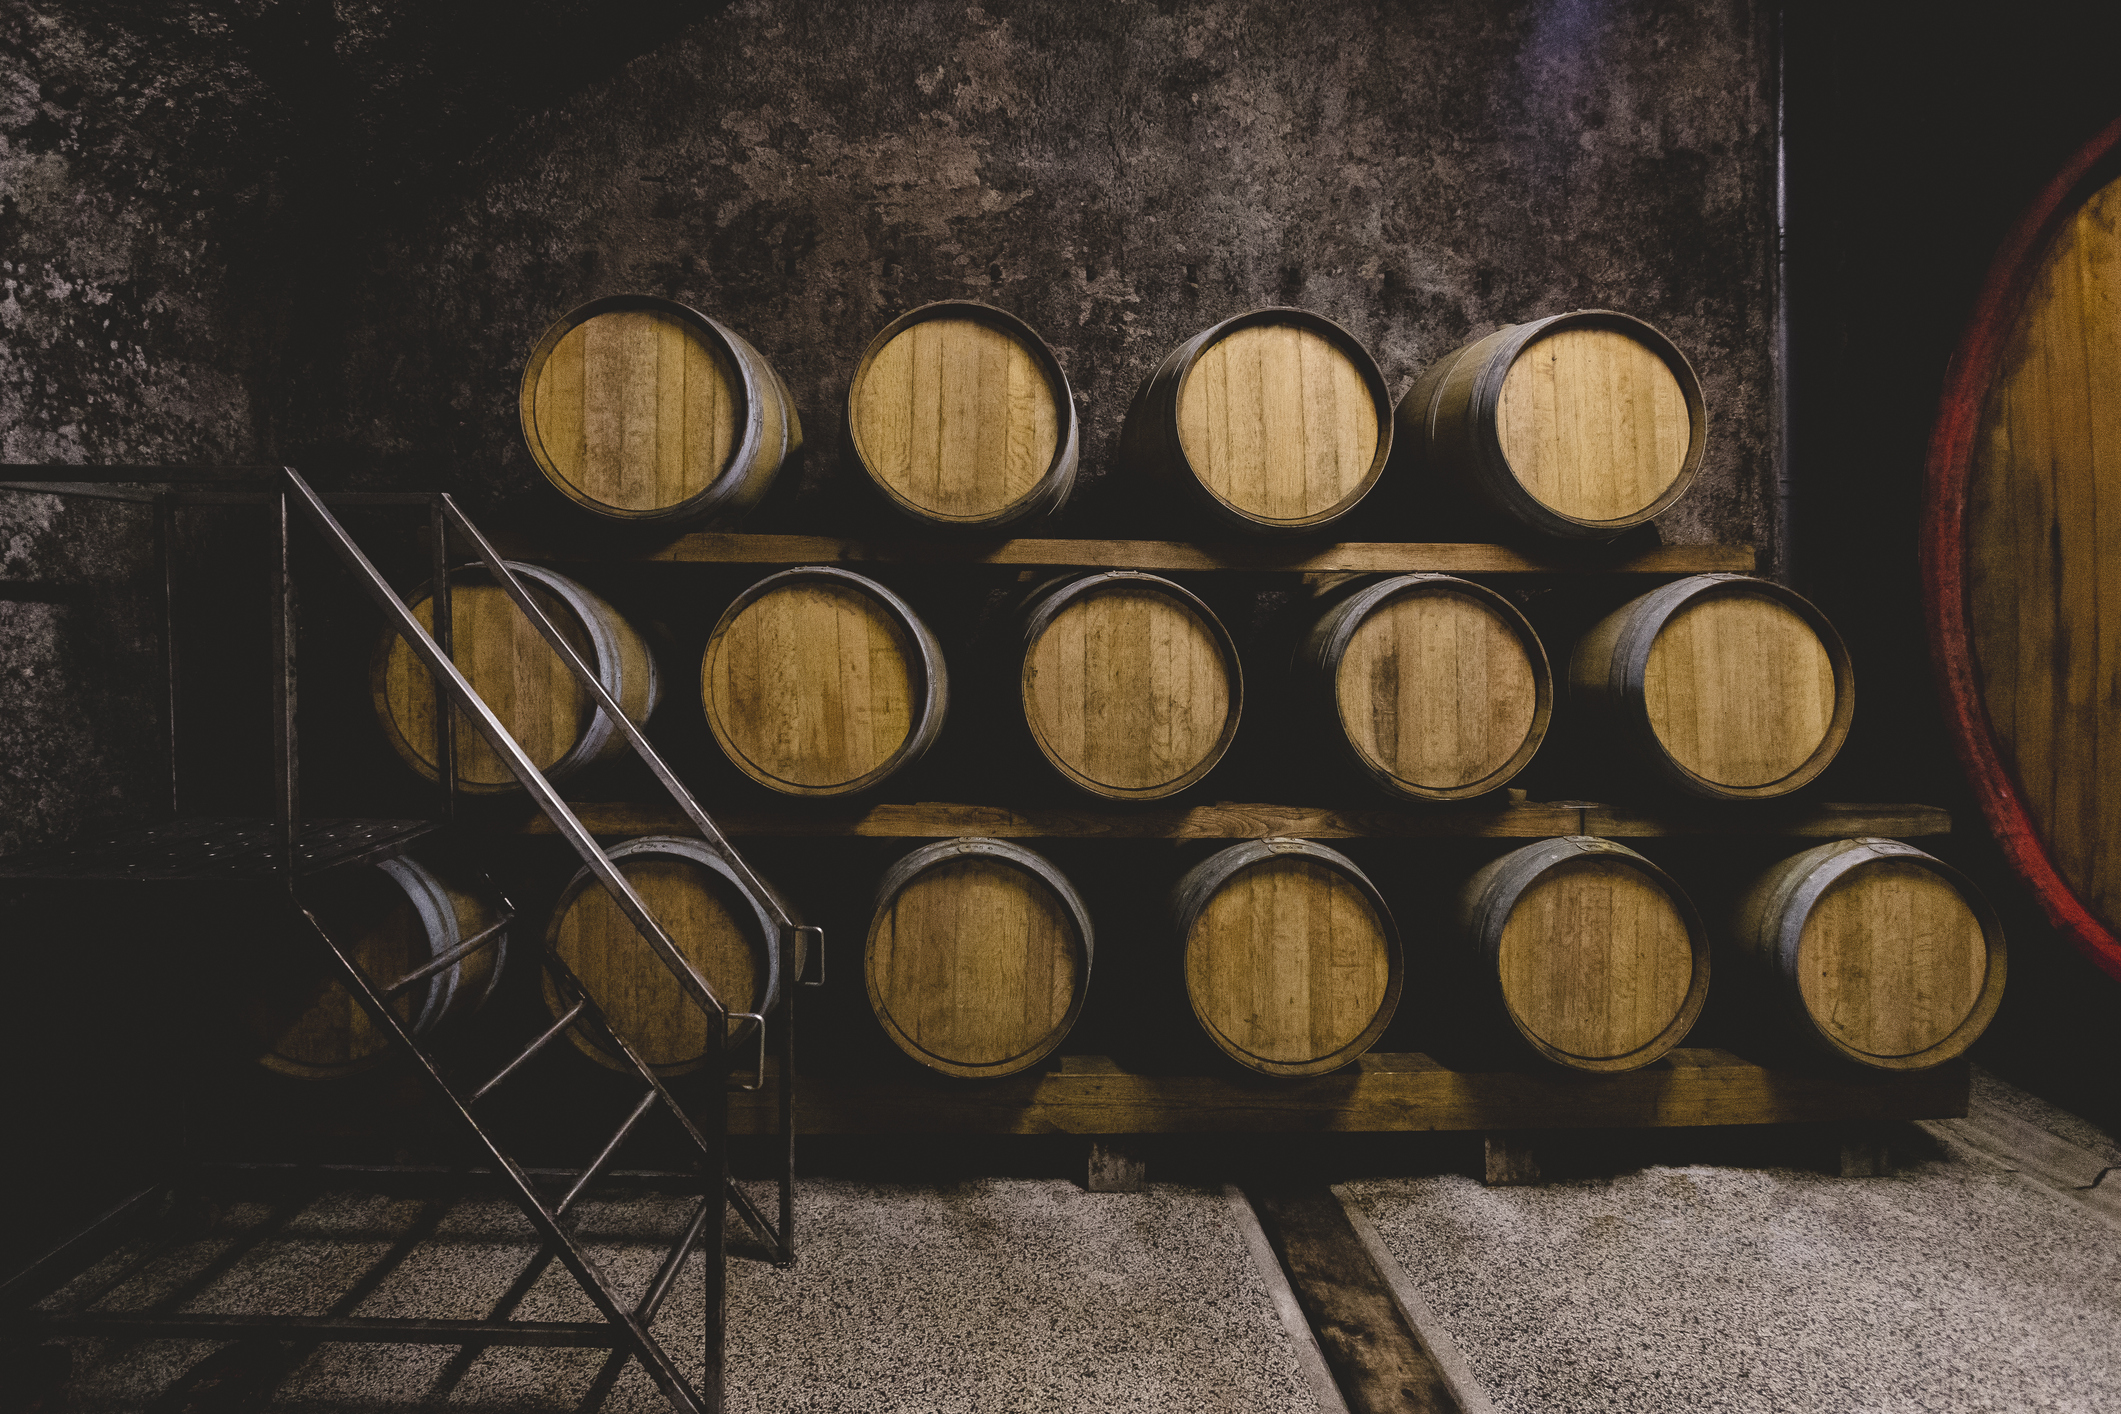 Enjoy a Taste of Tuscany at Bartolai Winery